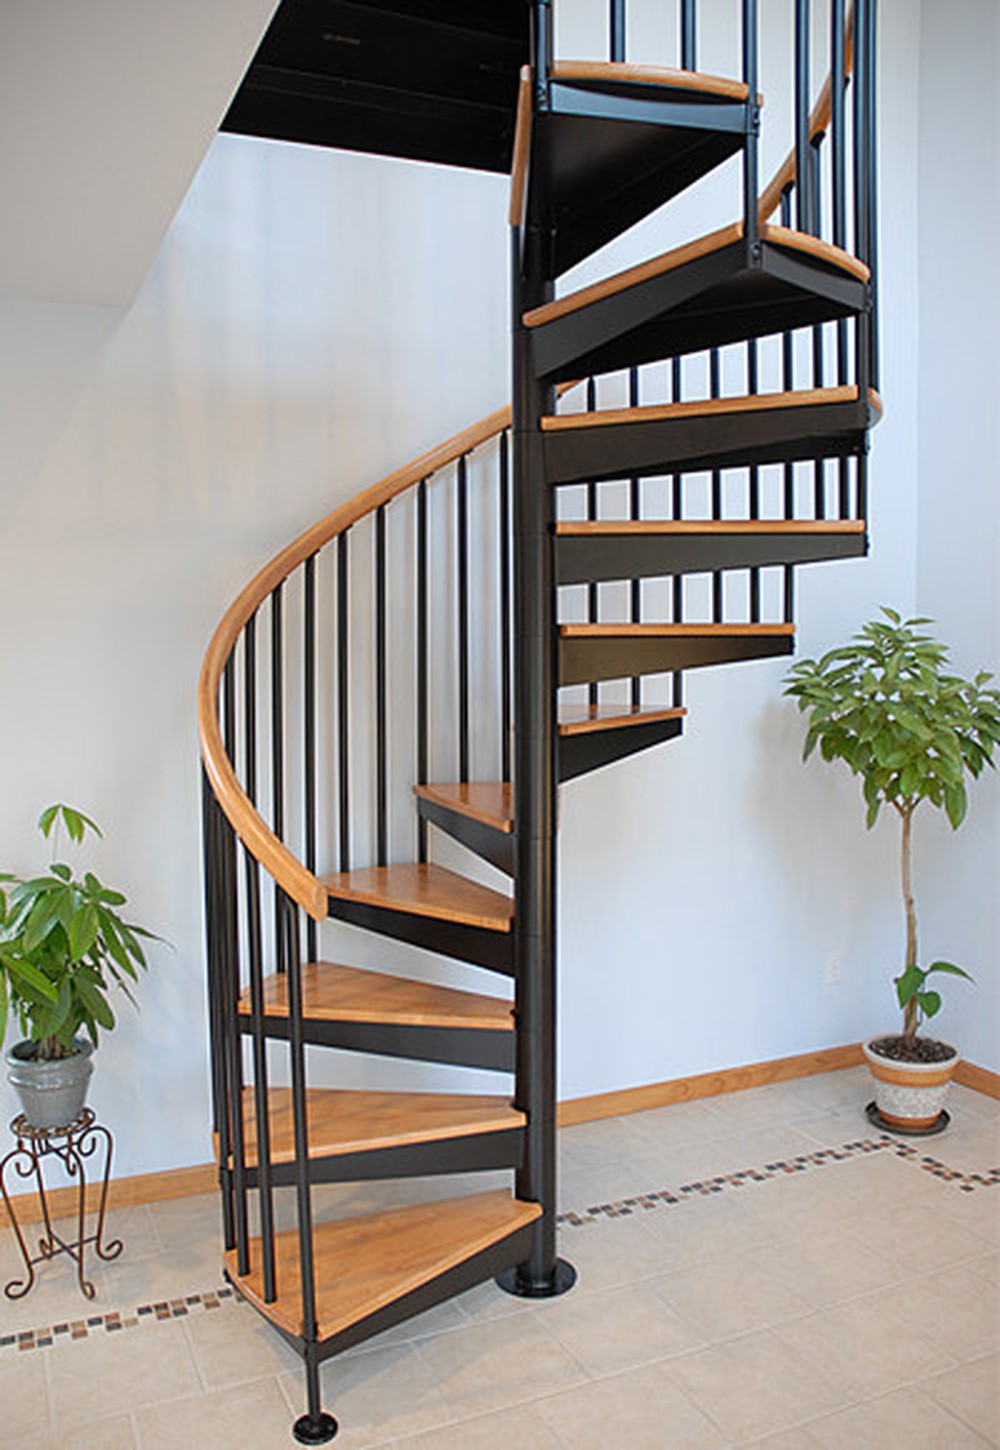 Thiết kế cầu thang xoắn ốc: Nếu bạn muốn tìm kiếm một giải pháp thiết kế cho chiếc cầu thang của mình, hãy xem qua những mẫu cầu thang xoắn ốc đang được yêu thích nhất hiện nay. Những kiểu cầu thang này không chỉ đẹp mà còn tiện đường và an toàn. Hãy để chúng tôi giúp bạn tìm ra chiếc cầu thang xoắn ốc đẹp và phù hợp nhất cho ngôi nhà của bạn.